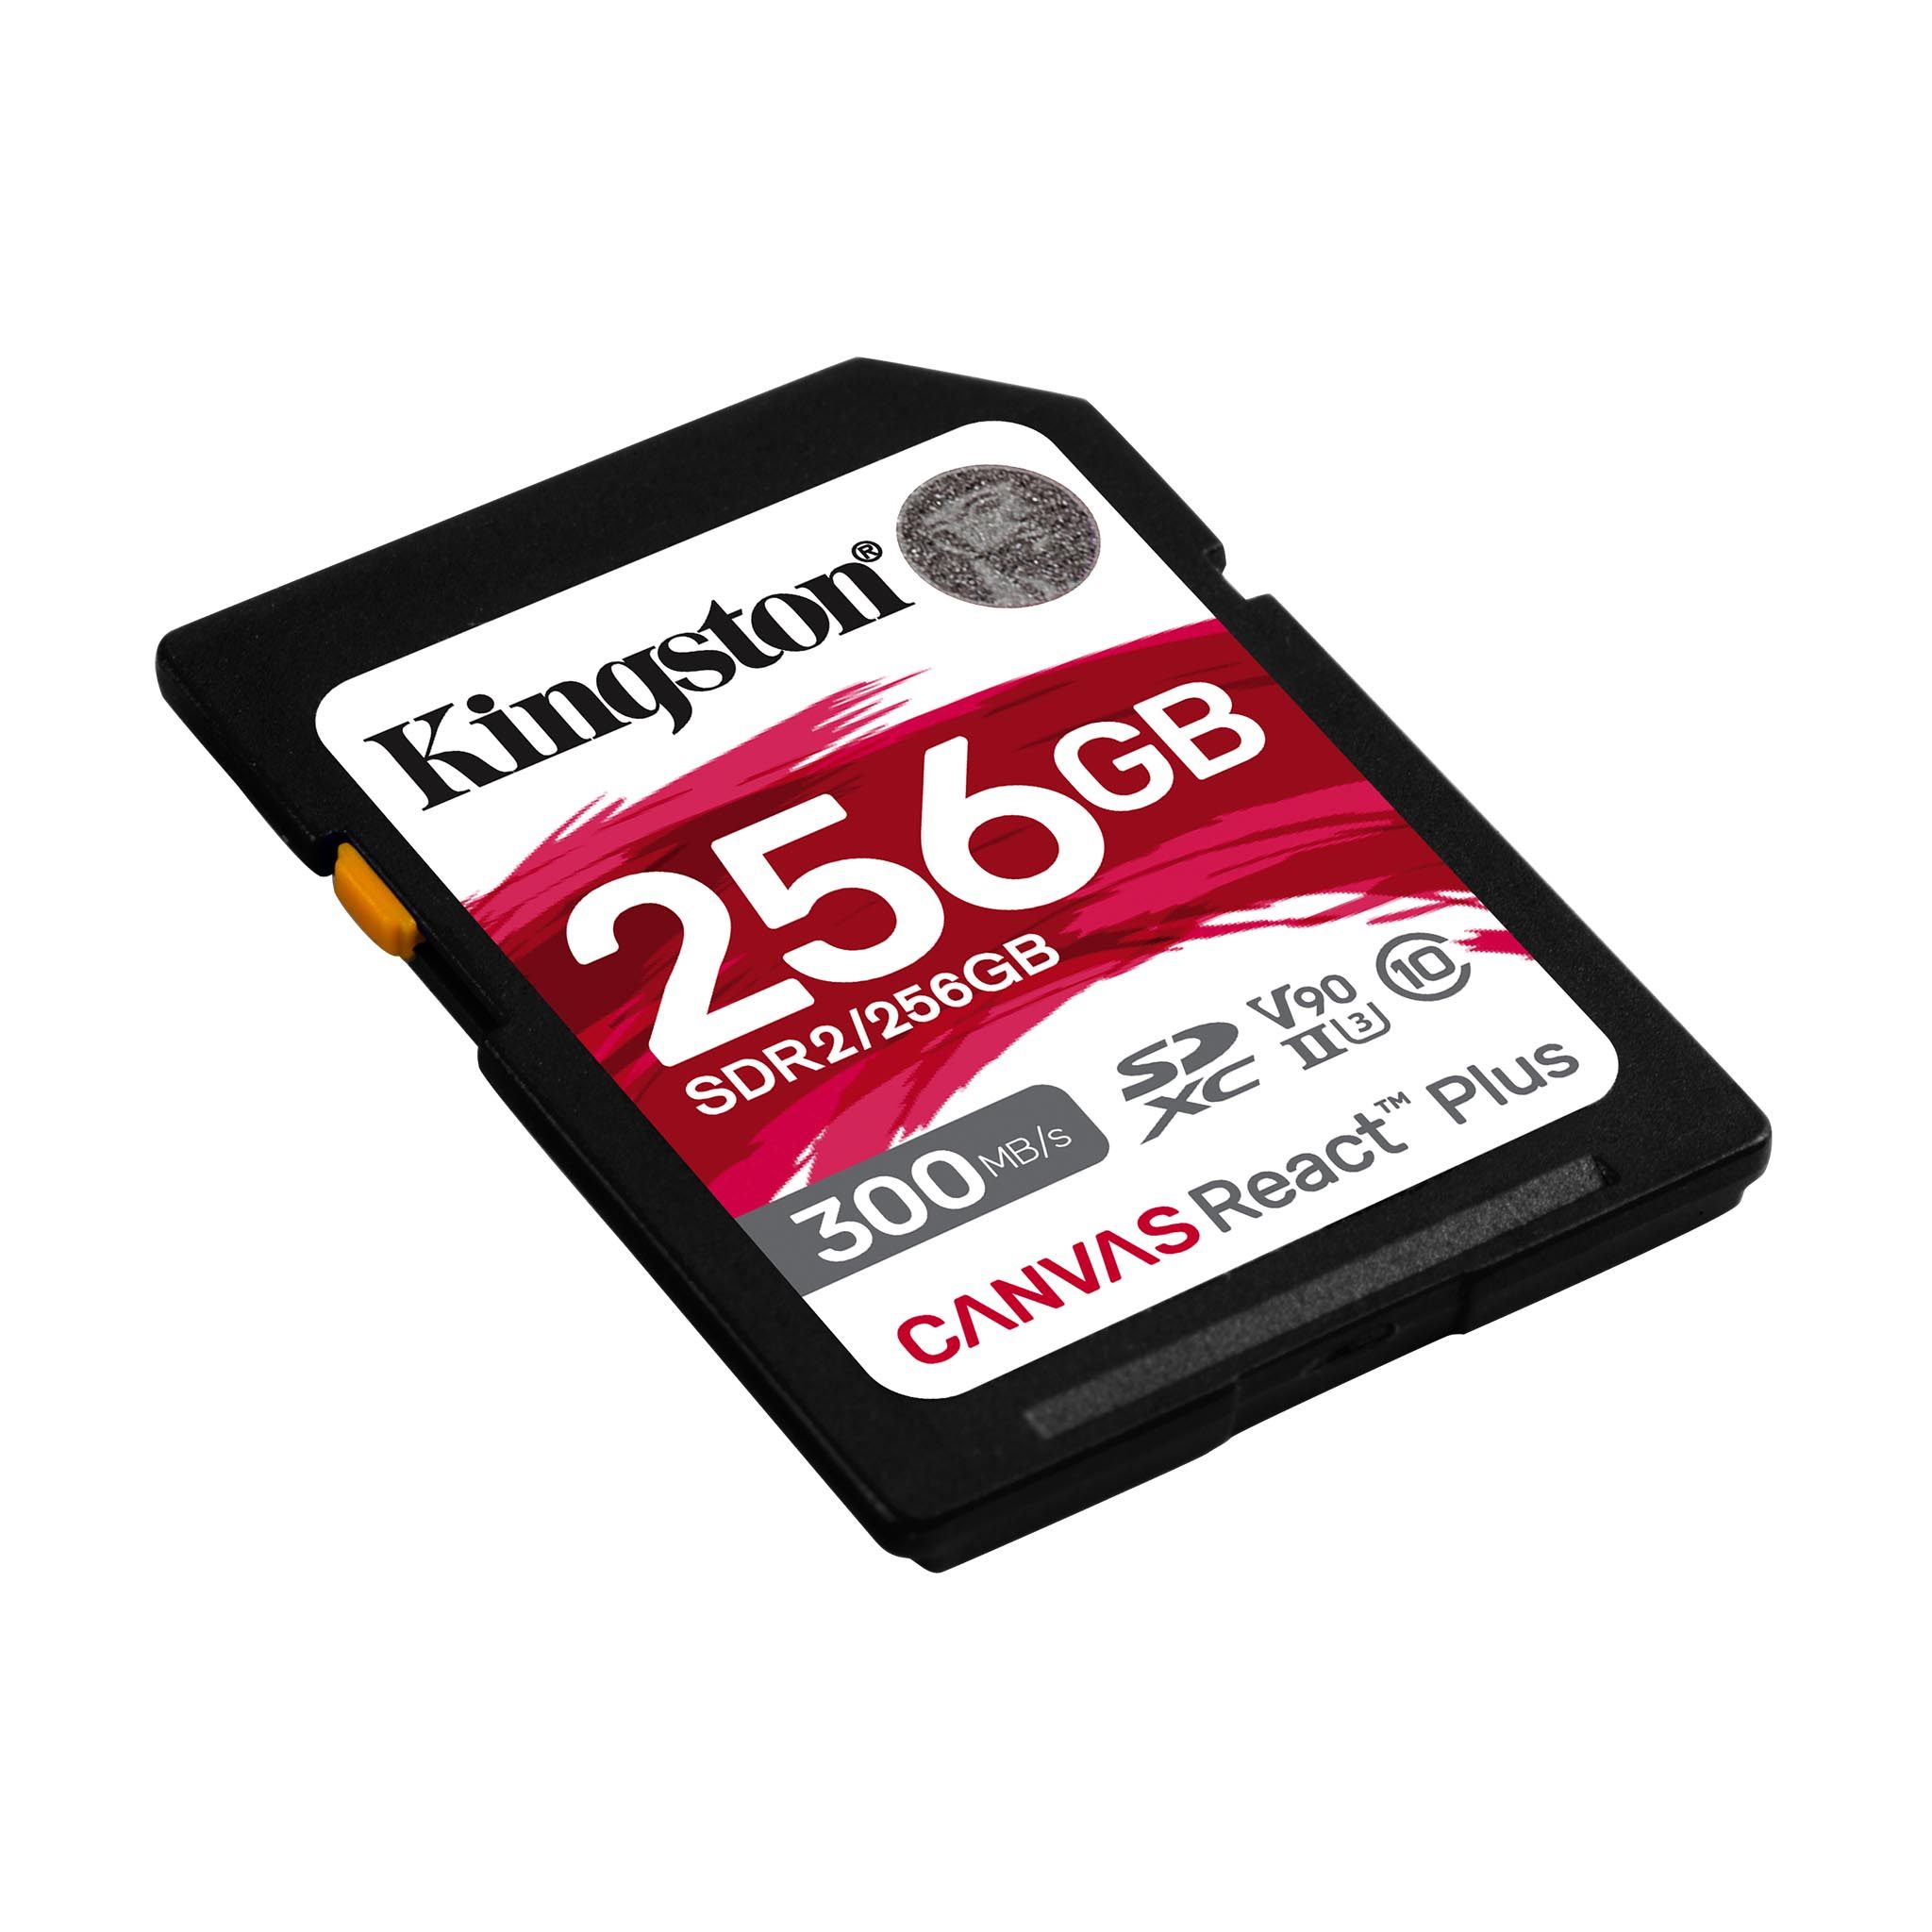  Cartes mémoire : Électronique : Micro SD Cards, SD & SDHC  Cards, Compact Flash Cards, Memory Sticks et plus